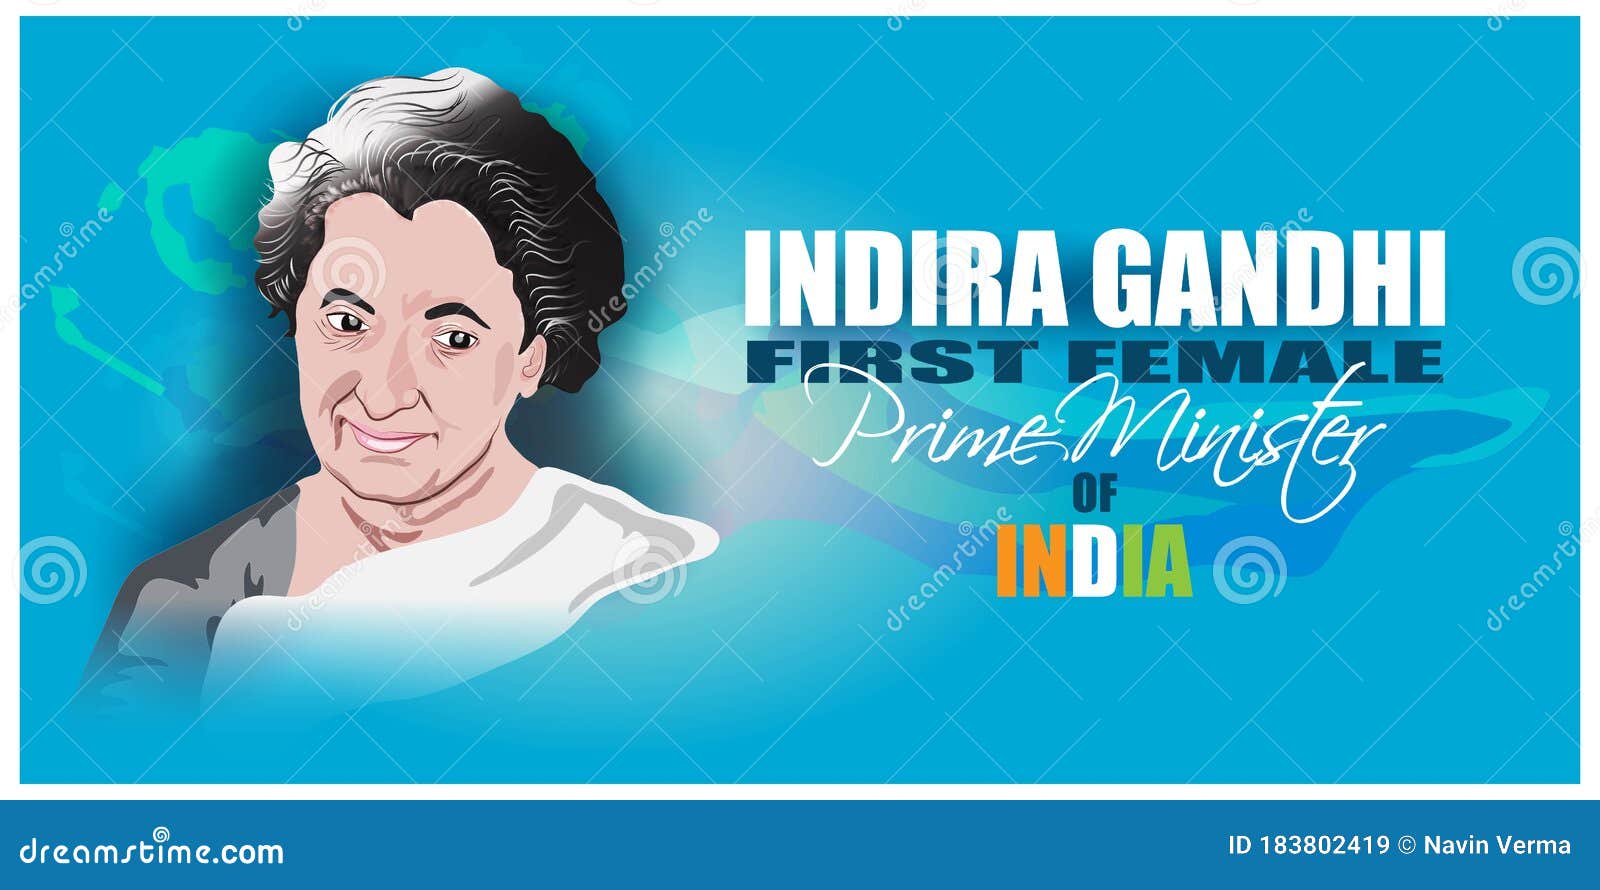 Indira Gandhi i Suppose That Leadership at One Time - Etsy Singapore